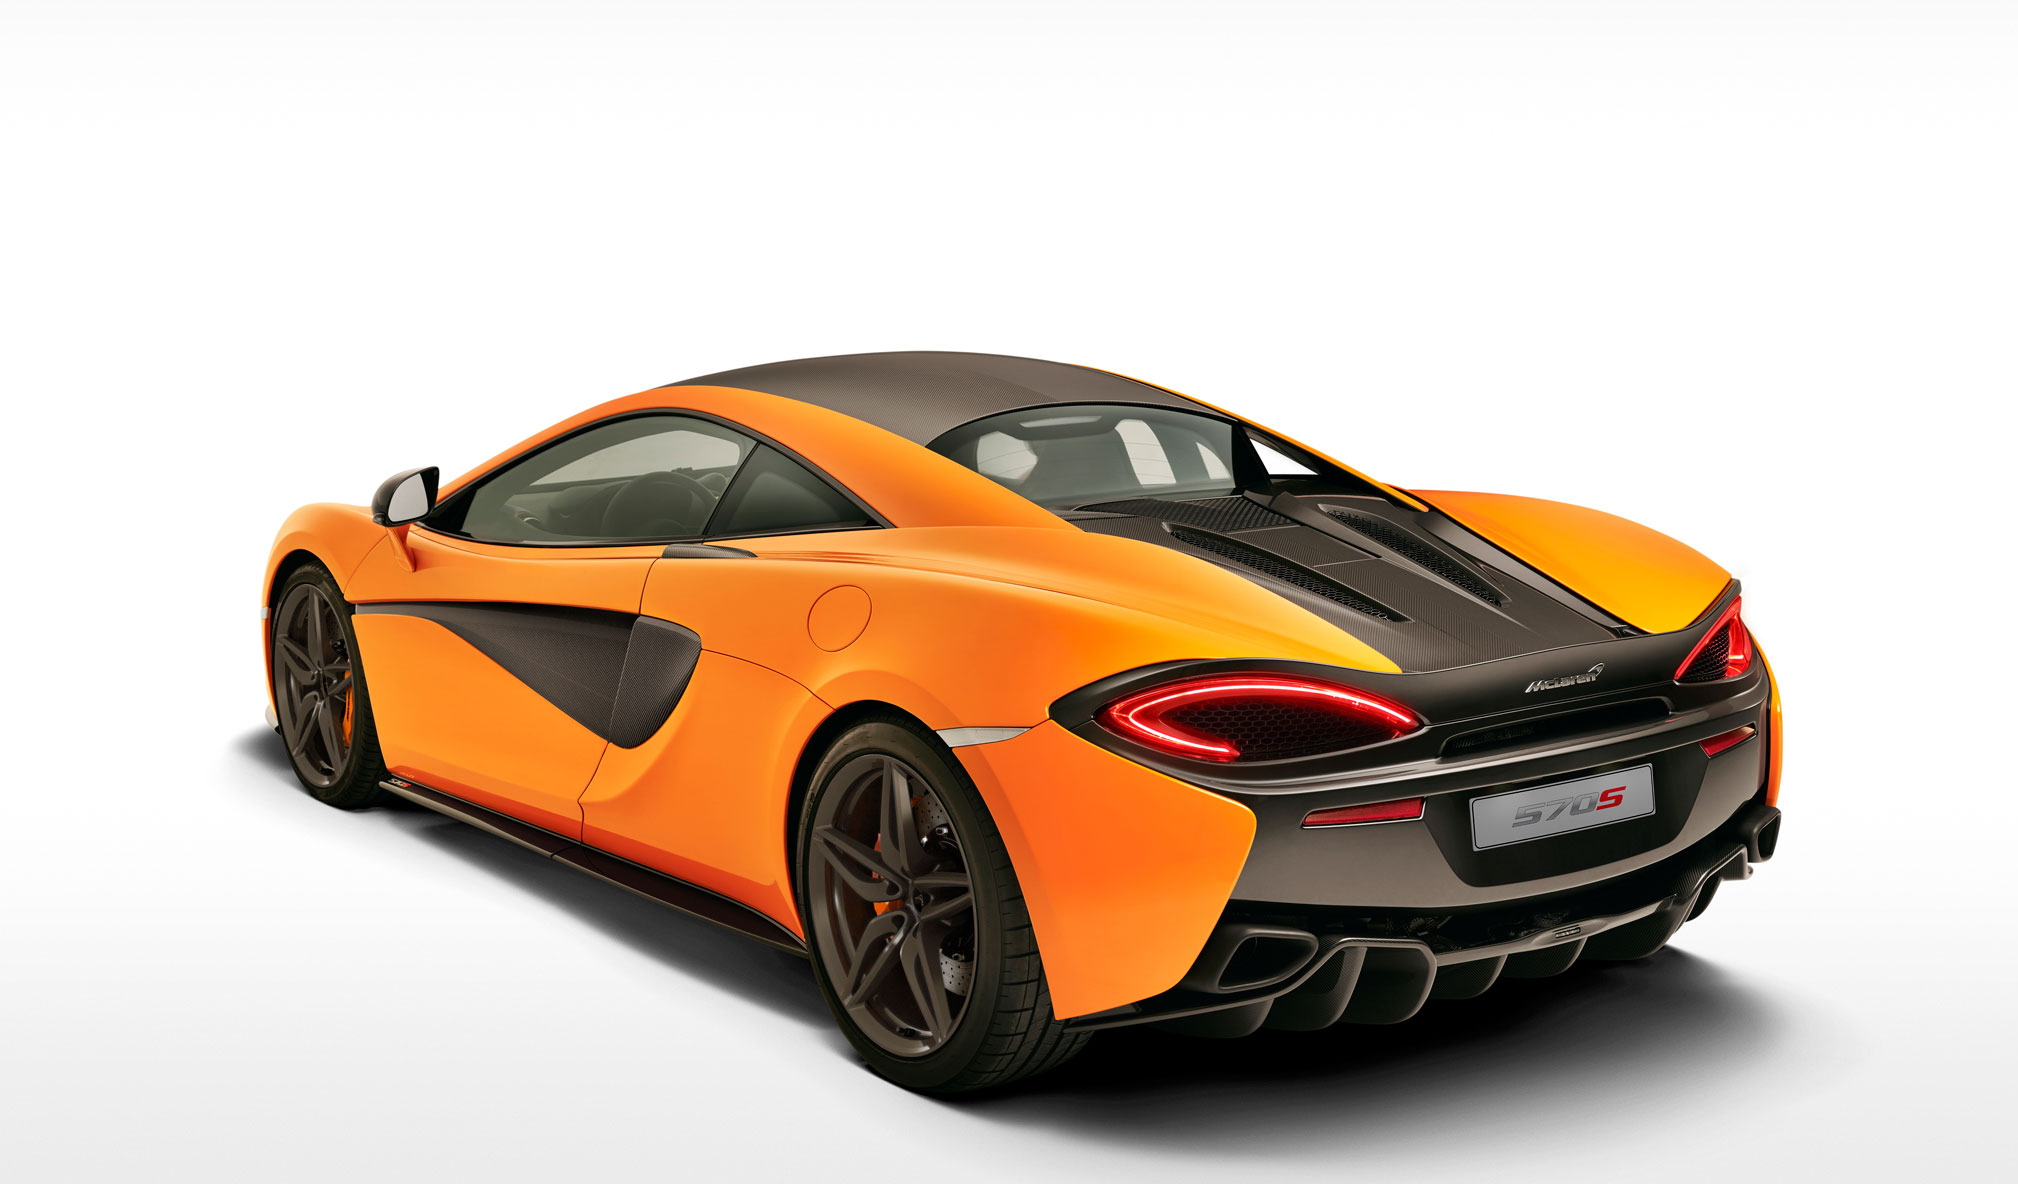 McLaren Backgrounds, Compatible - PC, Mobile, Gadgets| 2018x1184 px